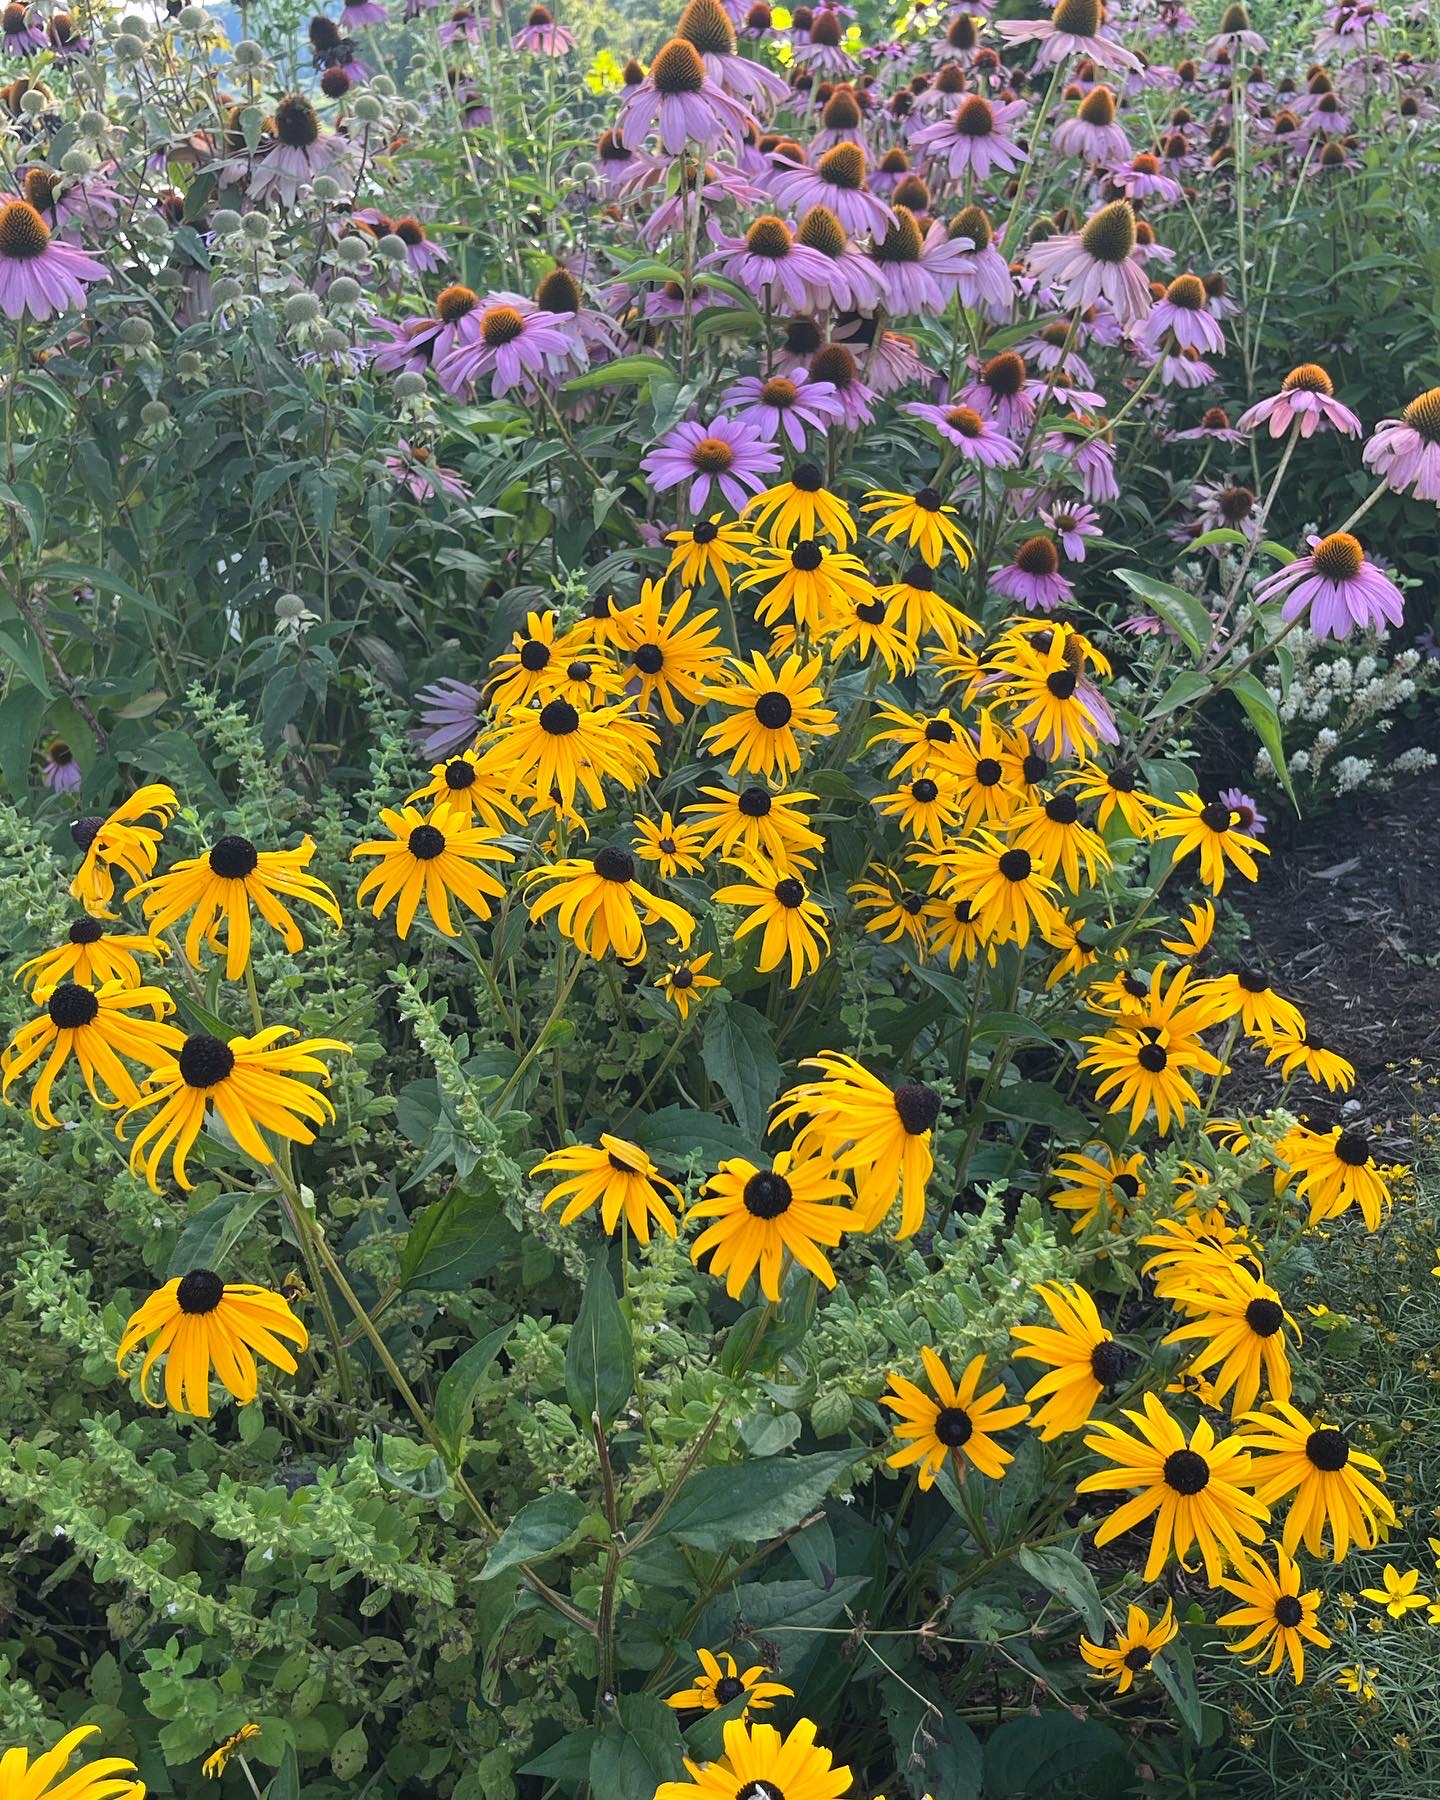 Flora at Confluence Park - Binghamton, NY